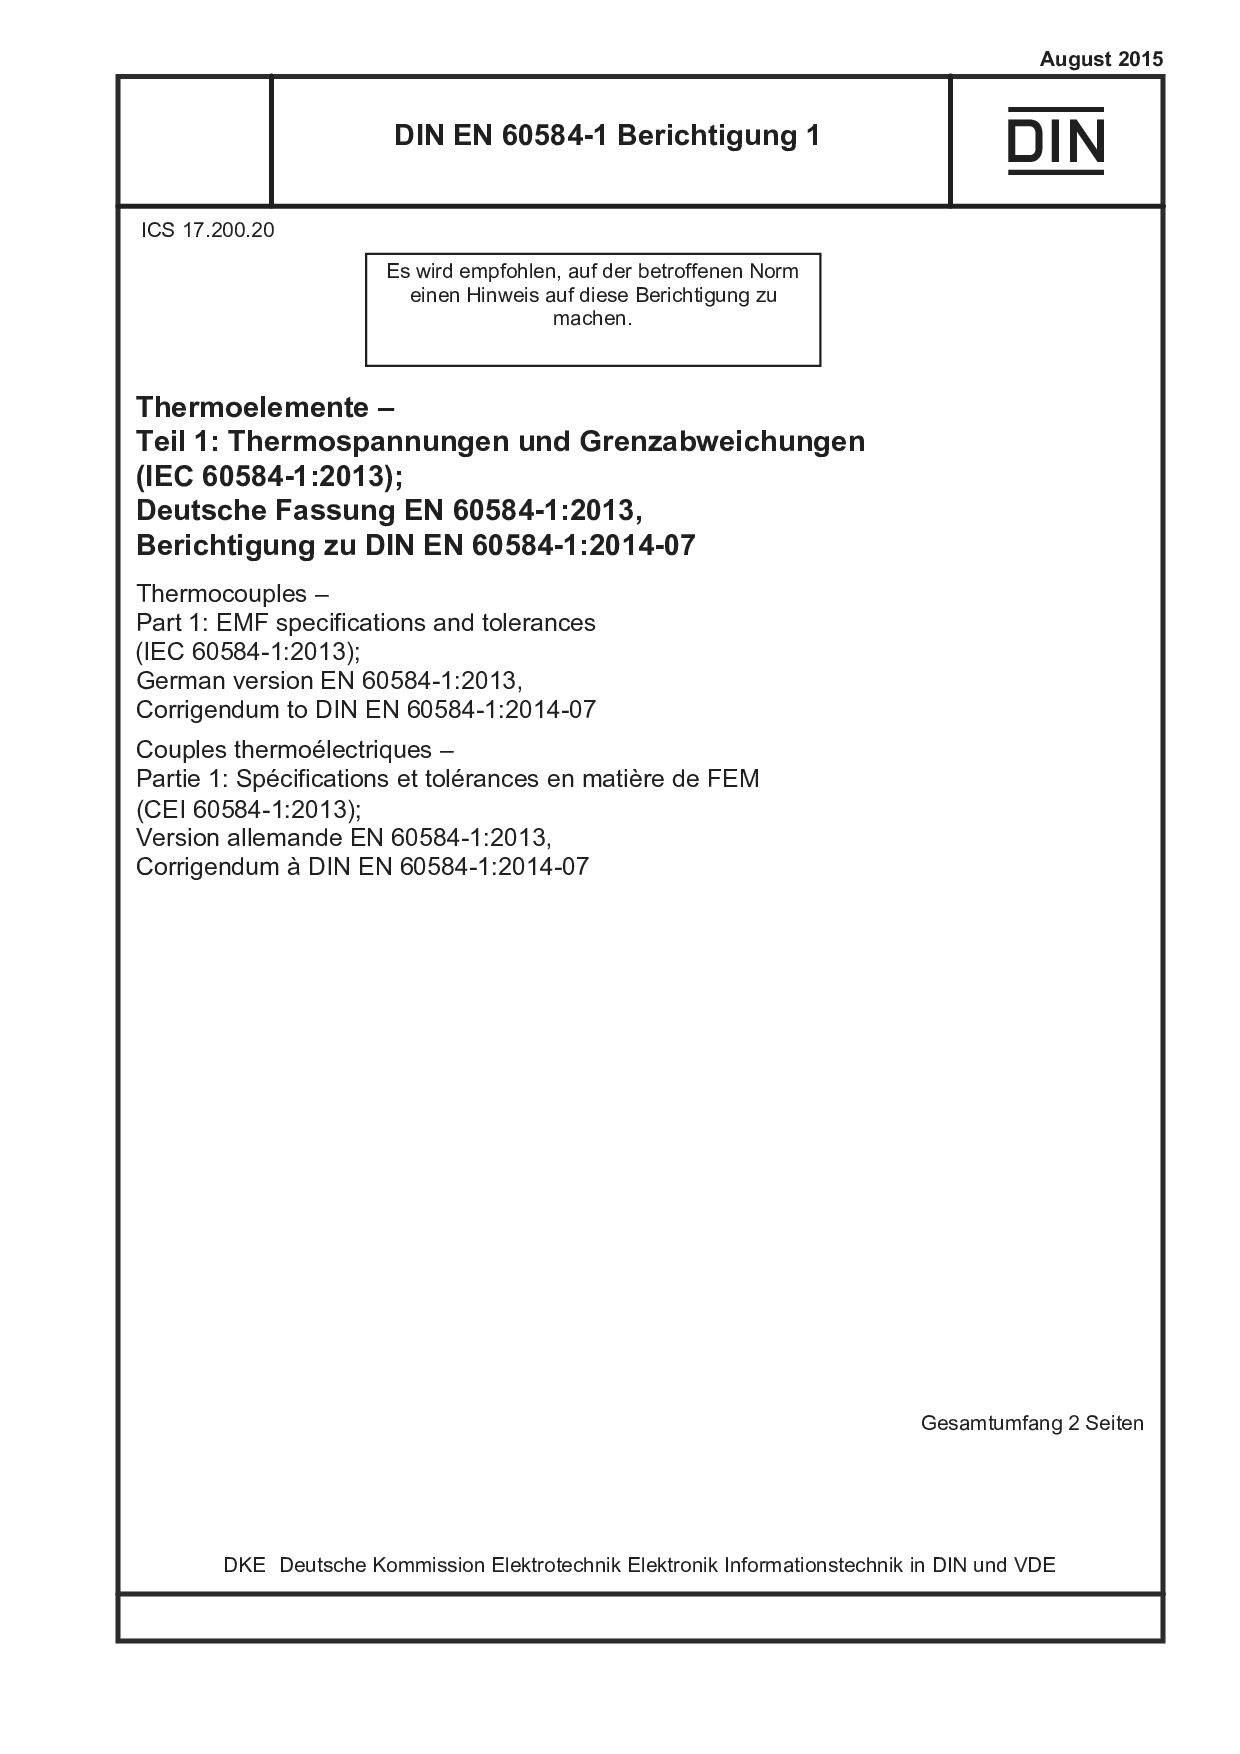 DIN EN 60584-1 Berichtigung 1:2015-08